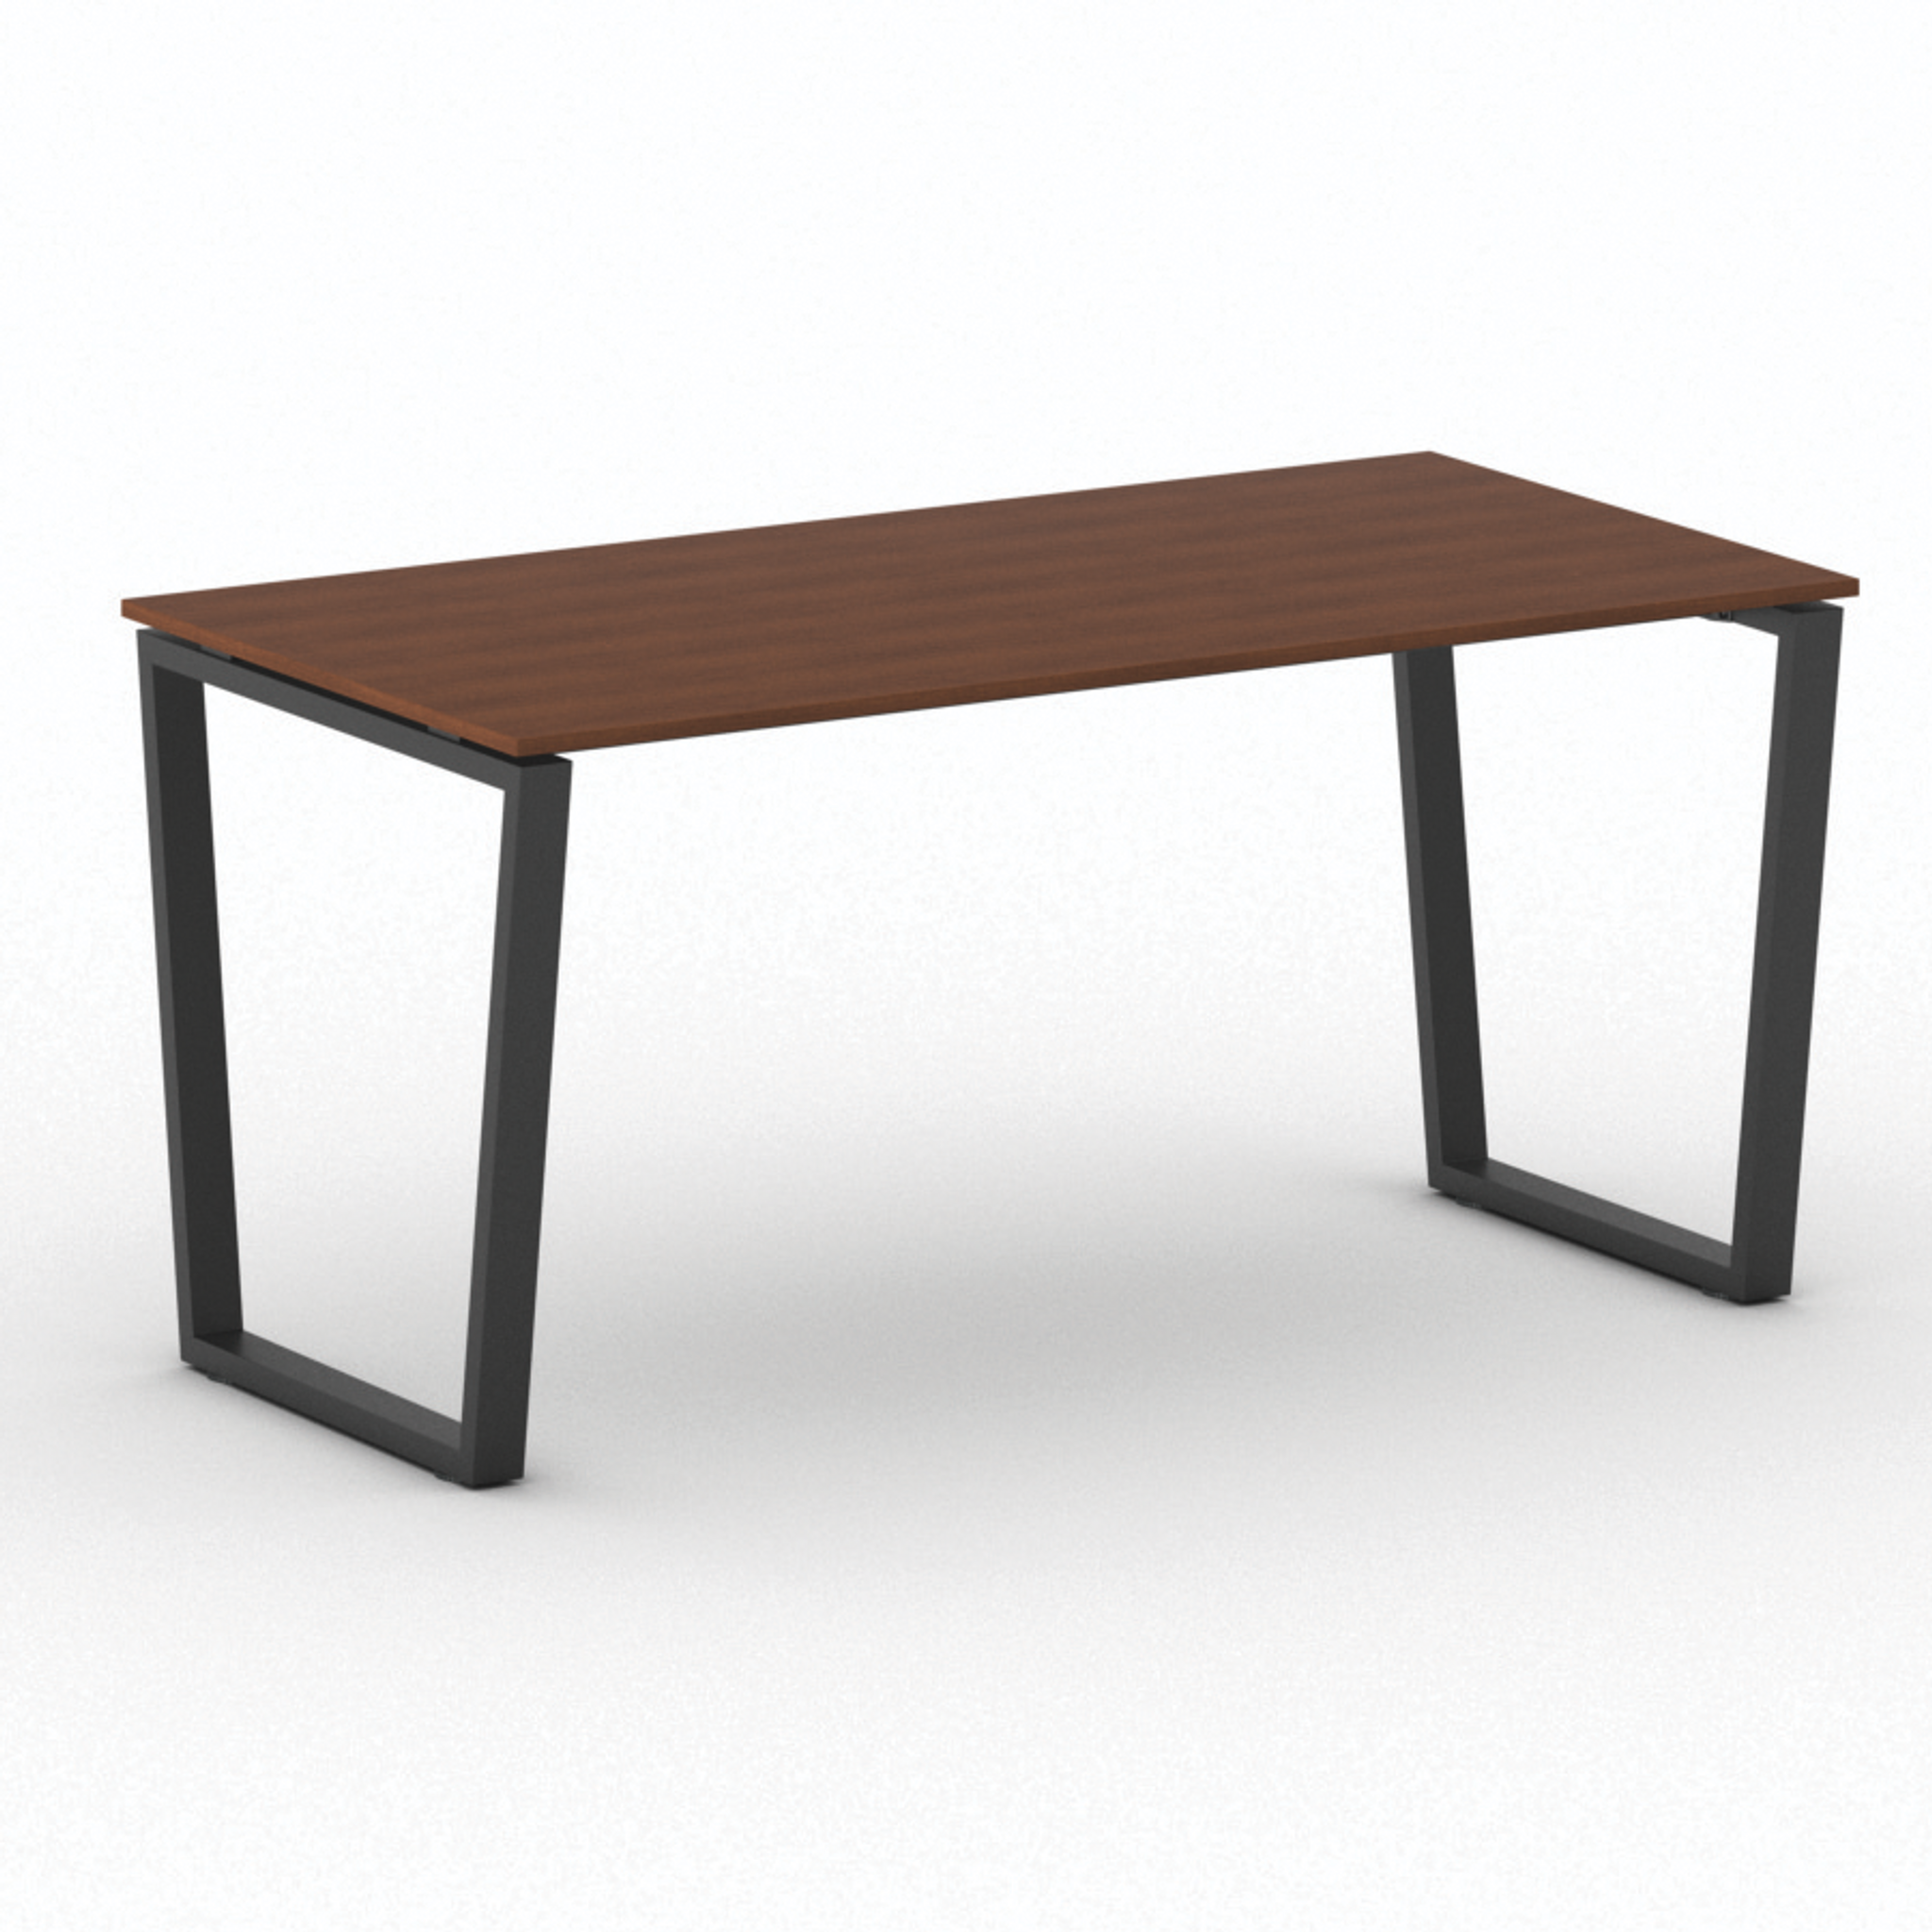 Kancelársky stôl PRIMO IMPRESS, čierna podnož, 1600 x 800 mm, čerešňa